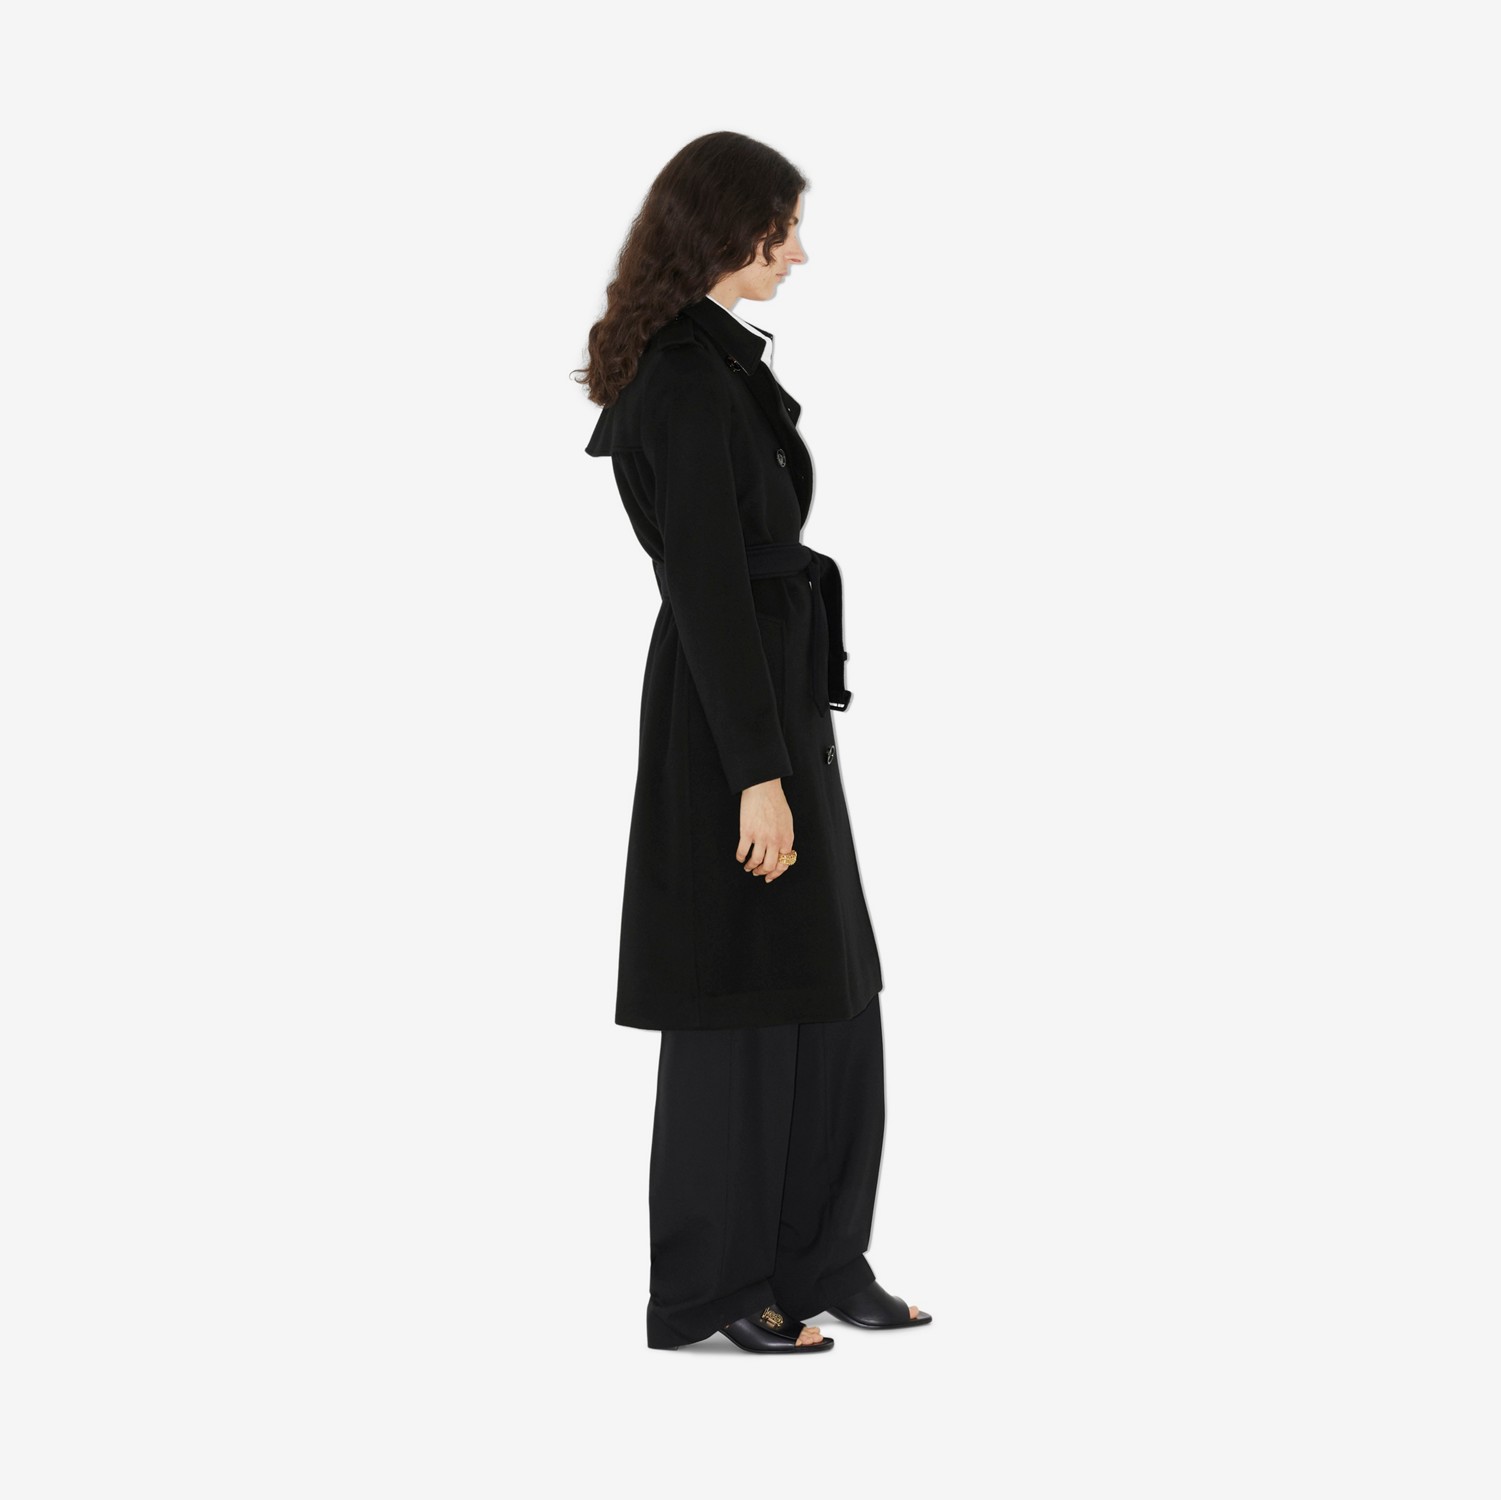 Trench coat Kensington em cashmere (Preto) - Mulheres | Burberry® oficial